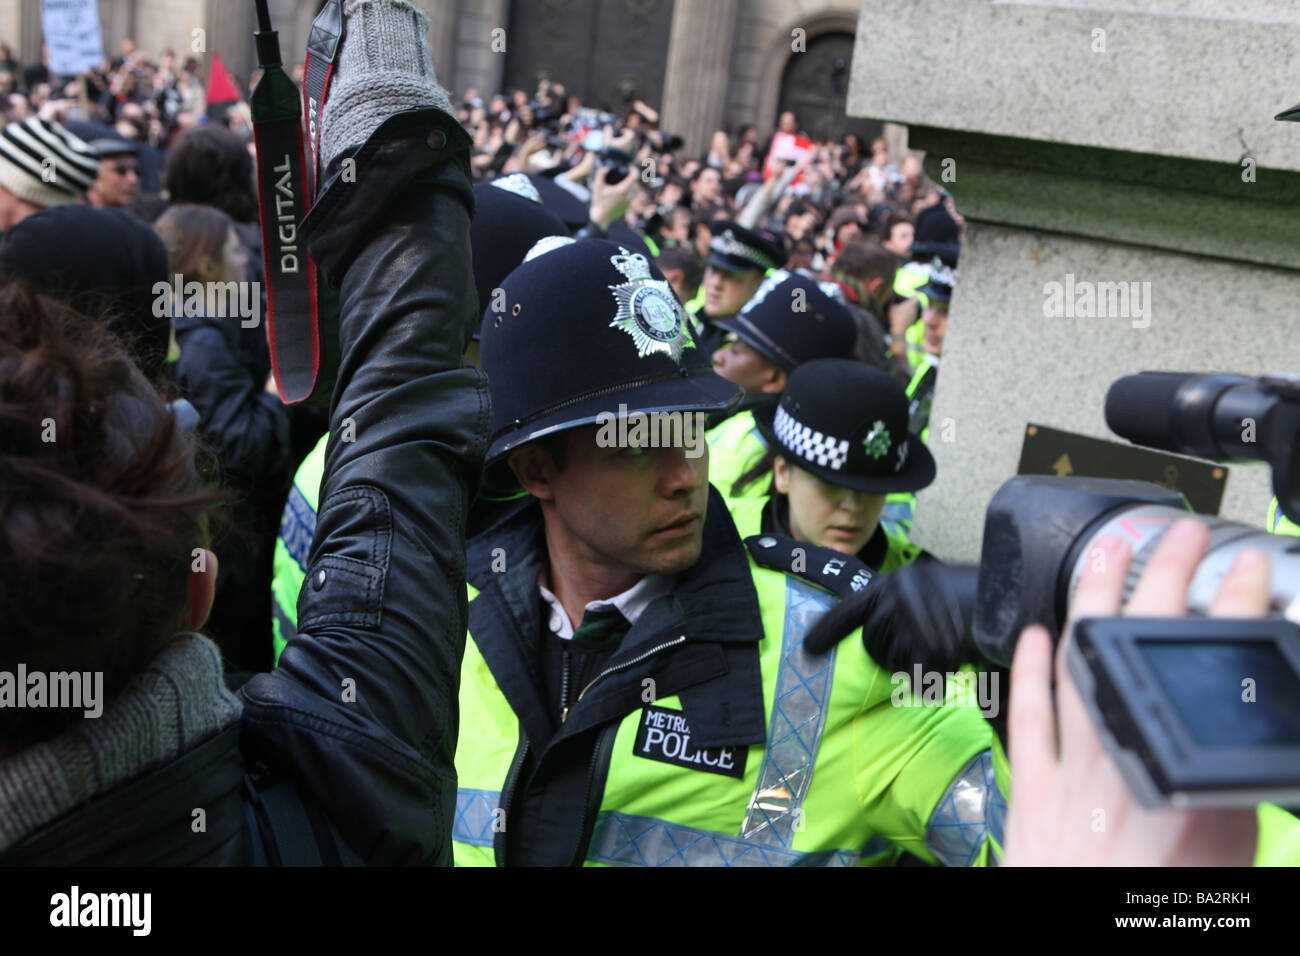 La queue de la police d'arrêter les manifestants lors du G20 à Londres manifestations. Ils empêchent les manifestants de quitter la manifestation Banque D'Images